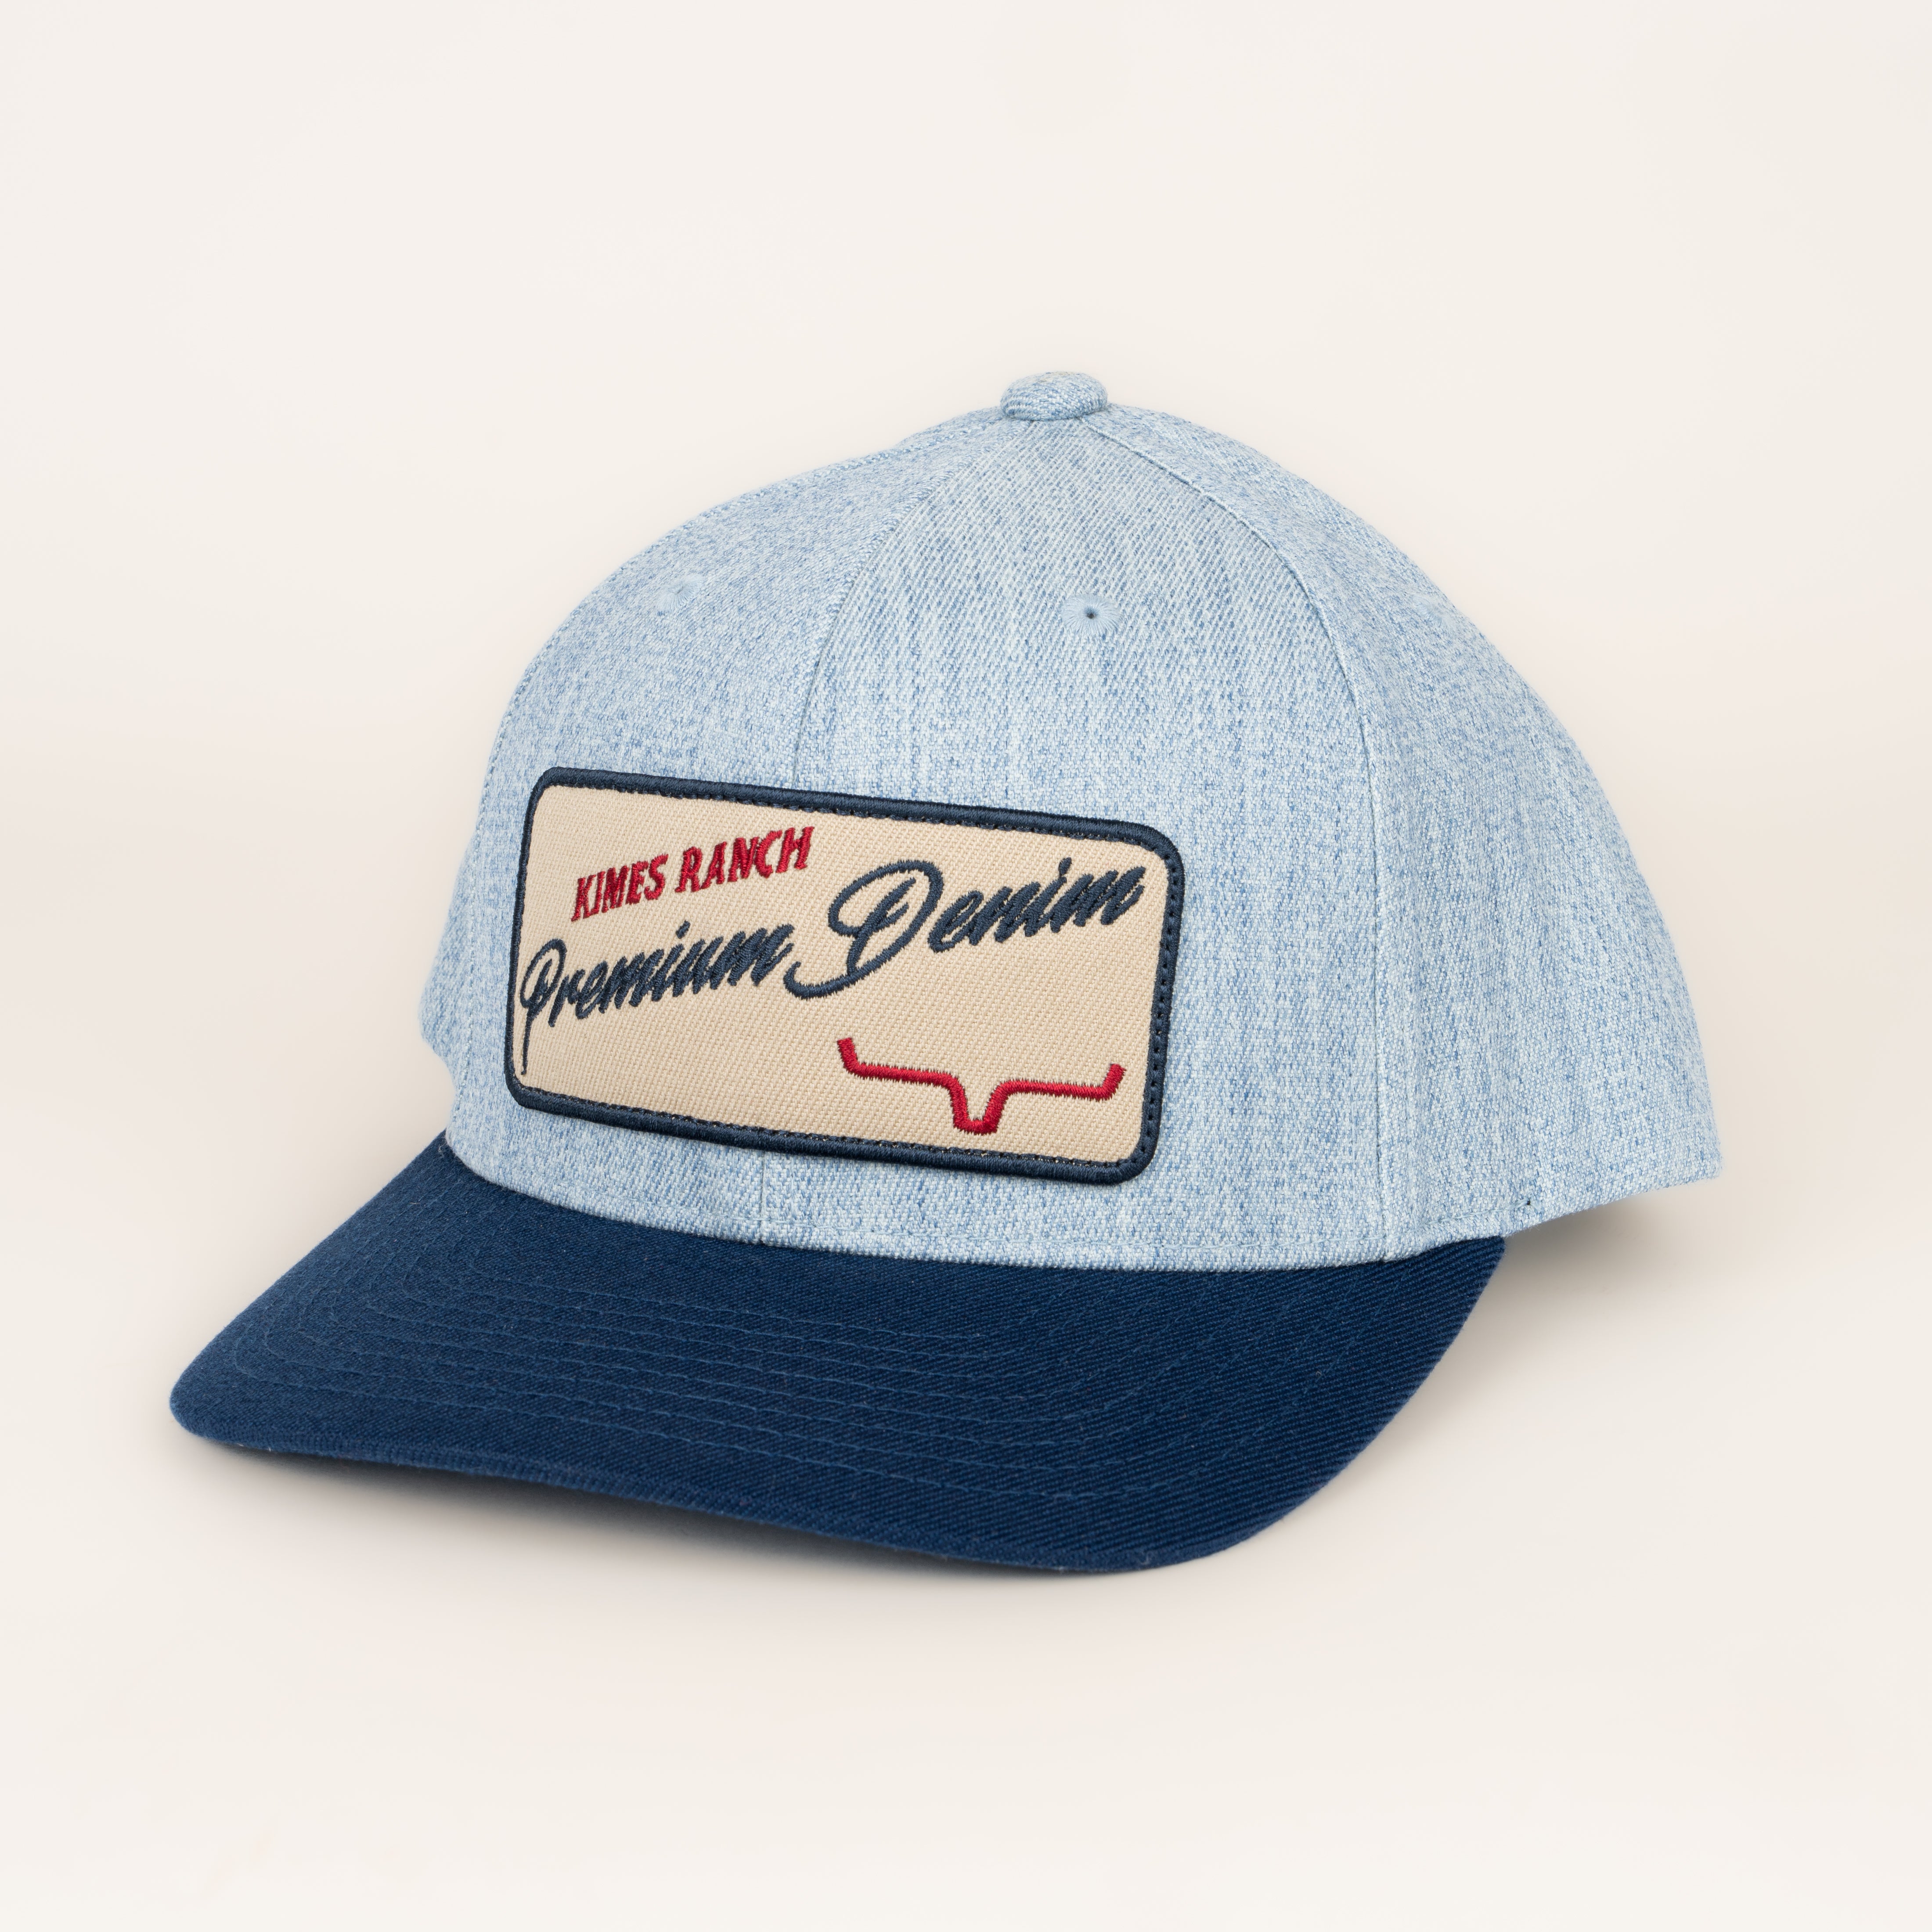 Gorra Kimes Ranch Premium Denim Hat Blue Heather